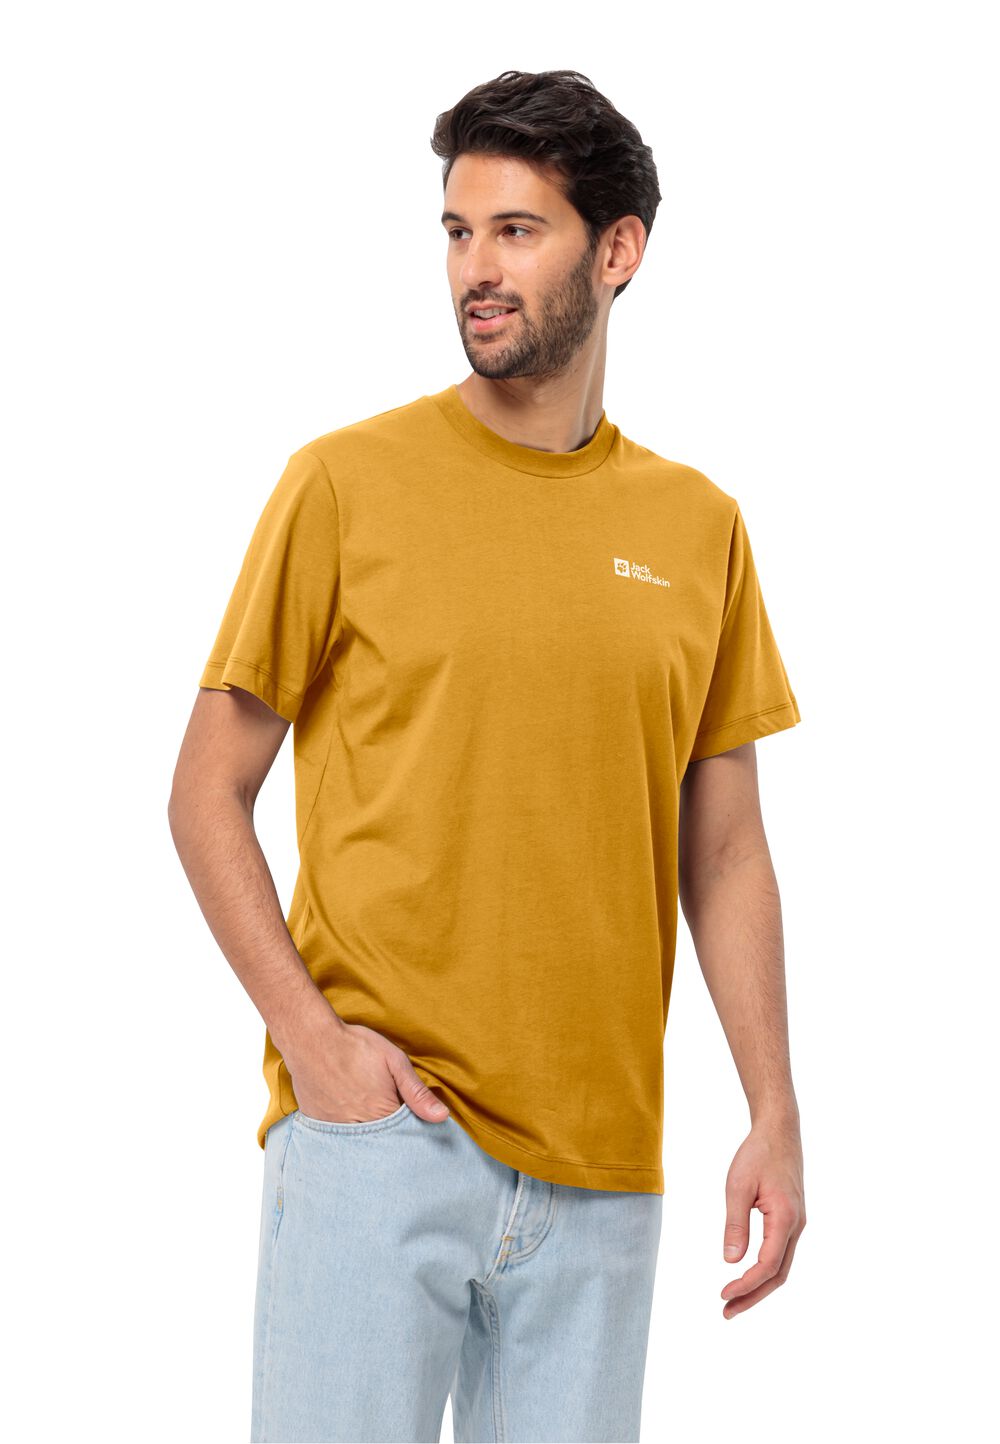 Jack Wolfskin Essential T-Shirt Men Heren T-shirt van biologisch katoen L bruin curry